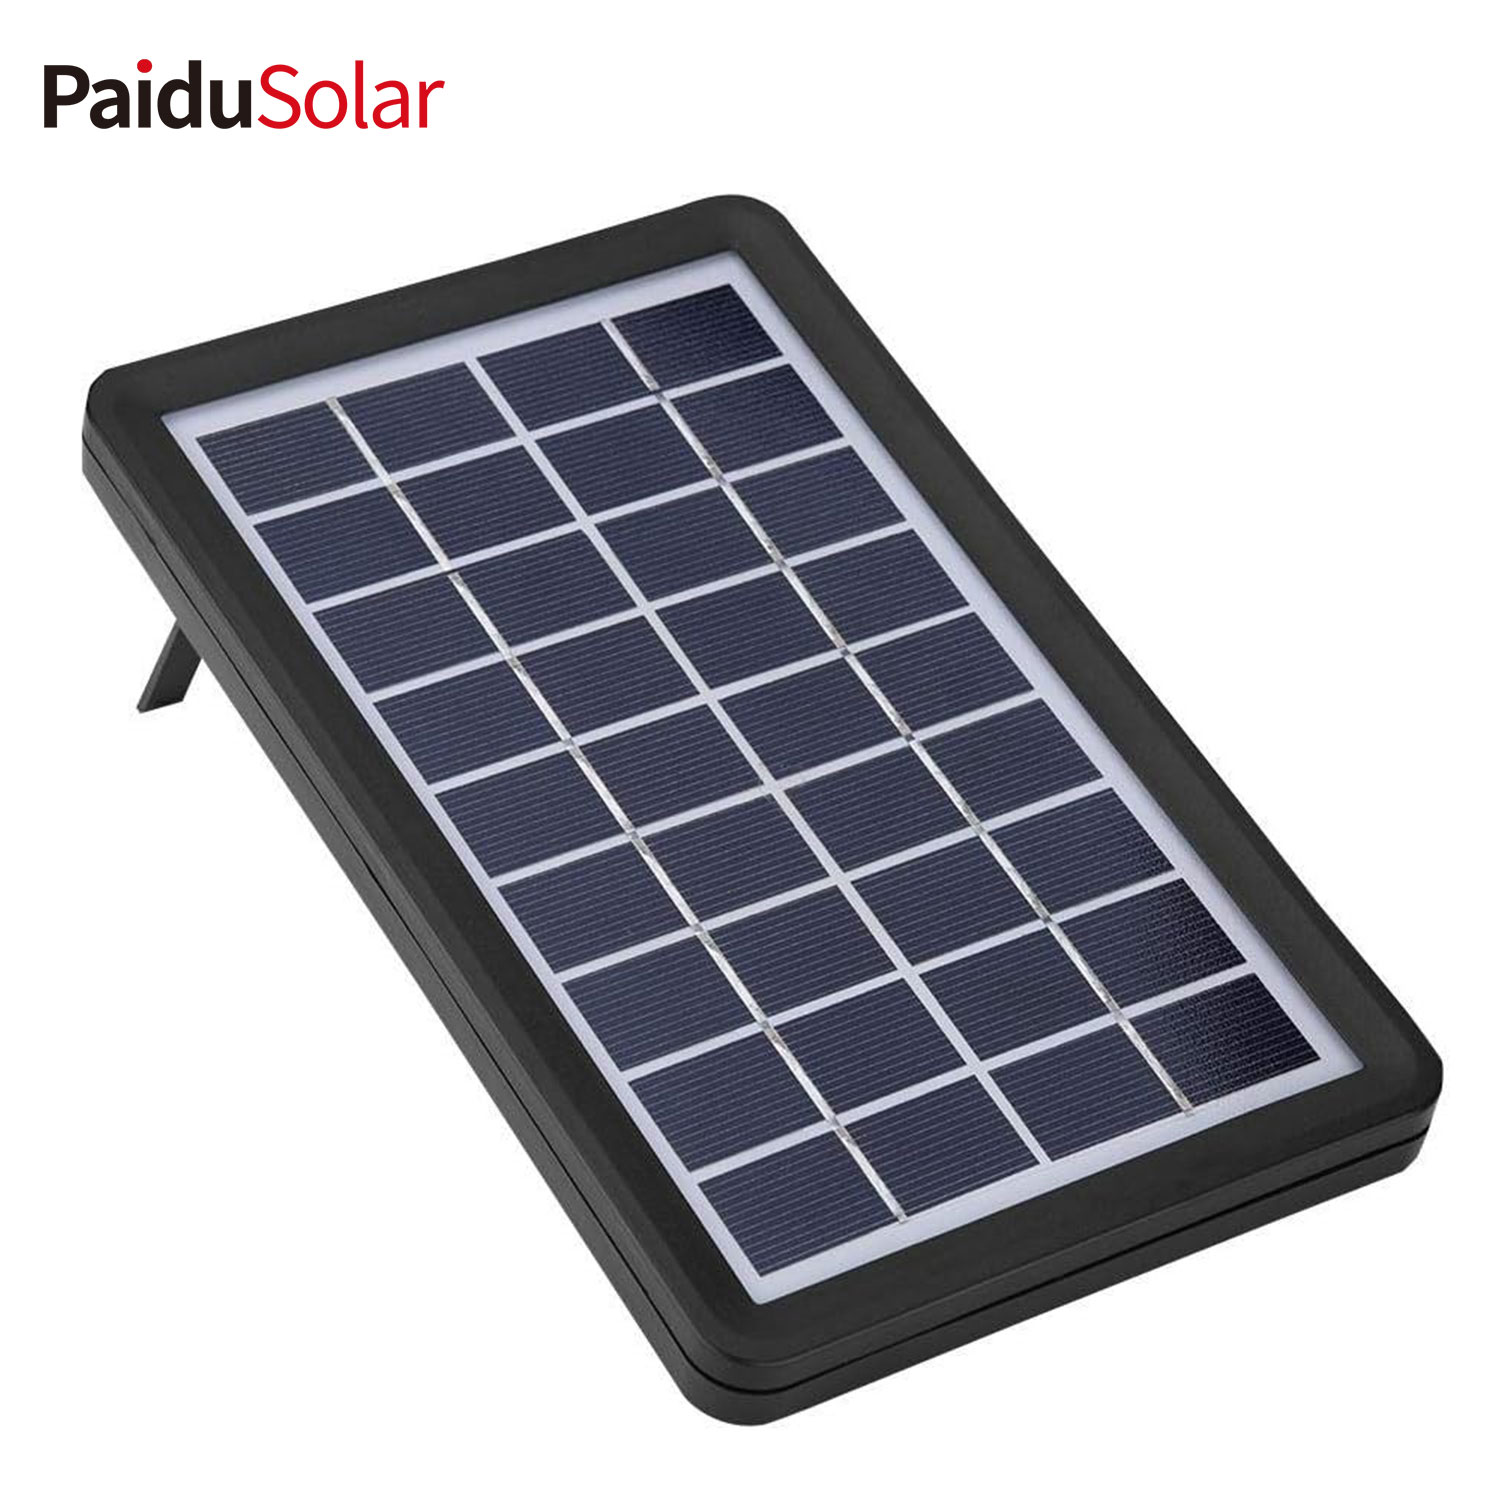 PaiduSolar 9V 3W Poly Silicon Solar Panel Solar Cell Don Cajin Batir